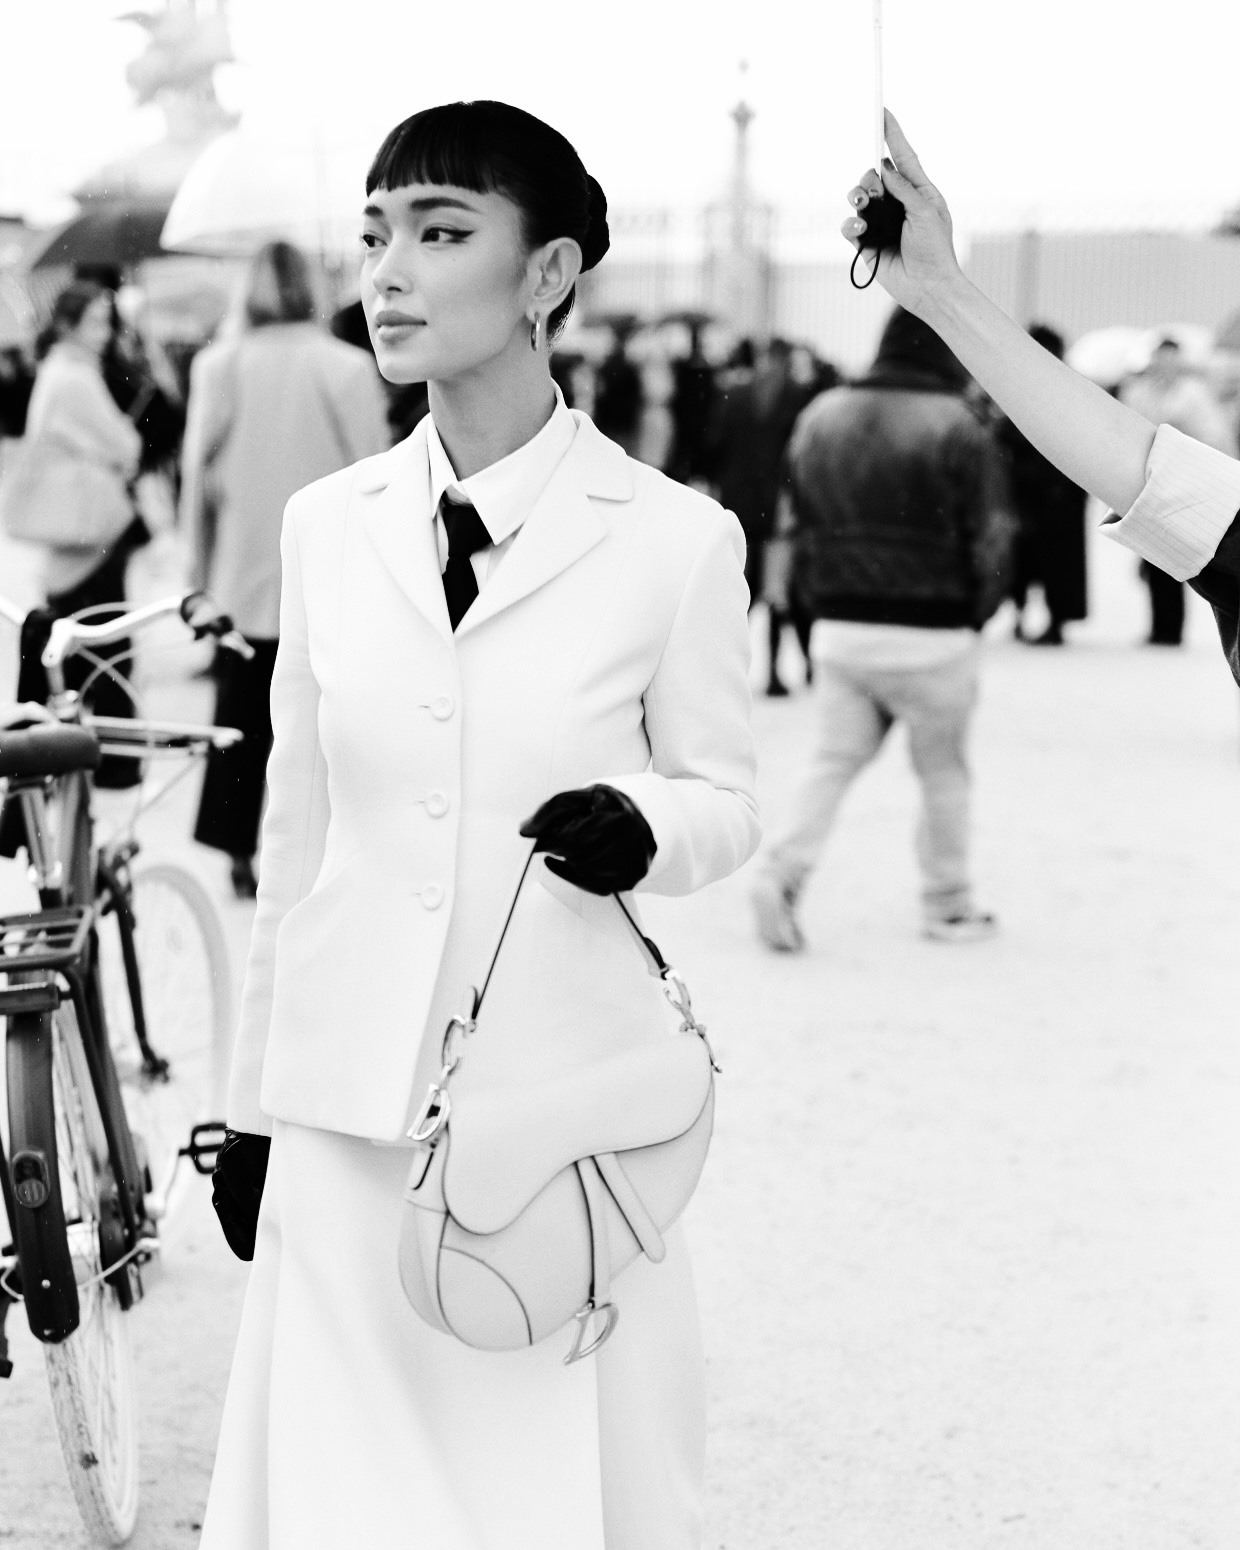 Do lịch trình dày đặc tại “Milan Fashion Week” trước đó, Châu Bùi đã không thể có mặt tại Paris sớm để fitting trực tiếp nên nhà mốt Dior đã tạo điều kiện để cô nàng fitting online (thử đồ trực tuyến) từ trước và đặc biệt gửi riêng trang phục đến cho Châu Bùi. Ảnh: NVCC.